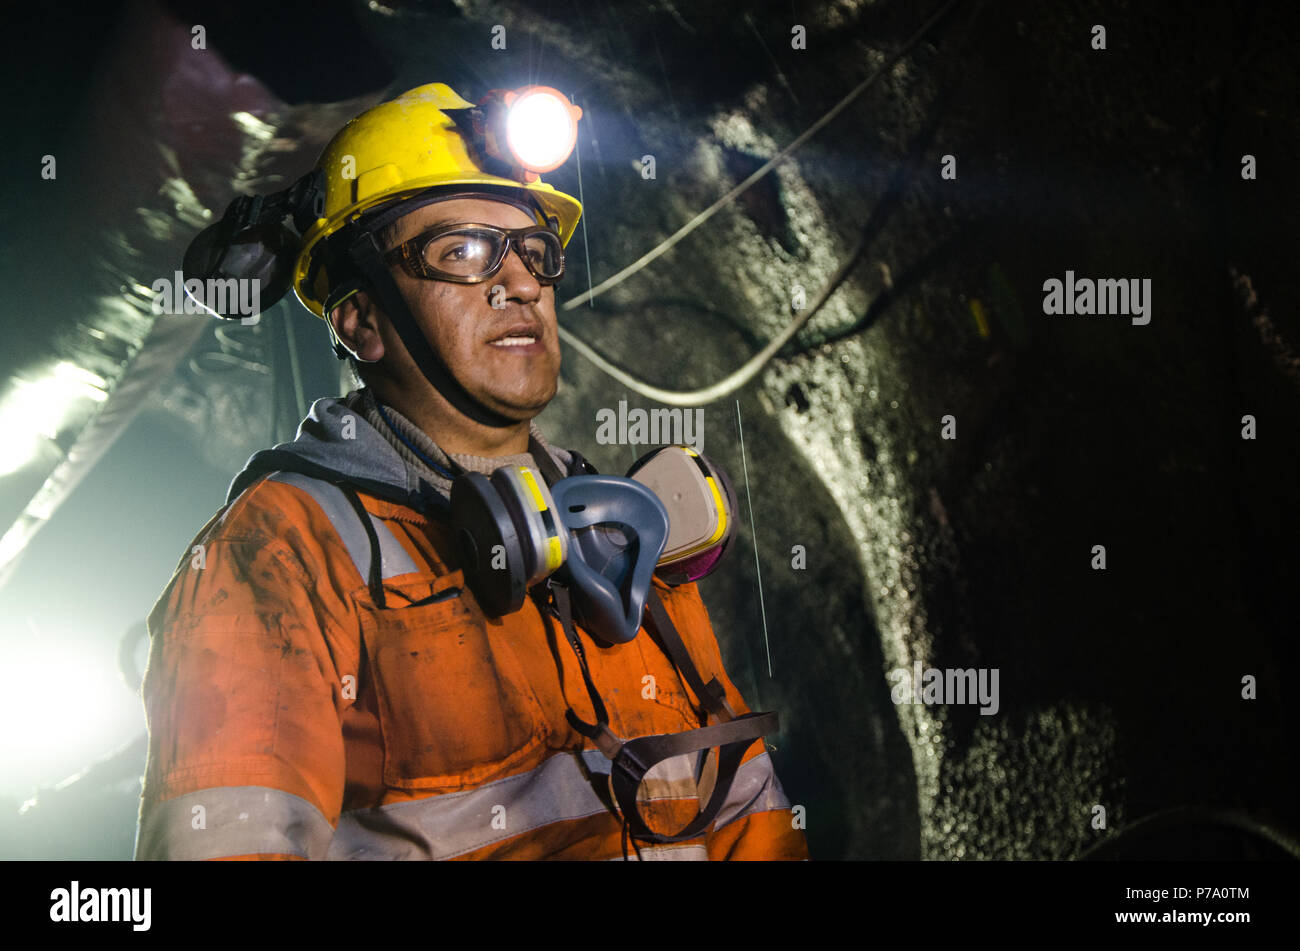 Cerro de Pasco, Pérou - 14 juillet 2017 : Miner dans la mine. Miner l'intérieur de la mine en uniforme et avec un air de confiance. Banque D'Images